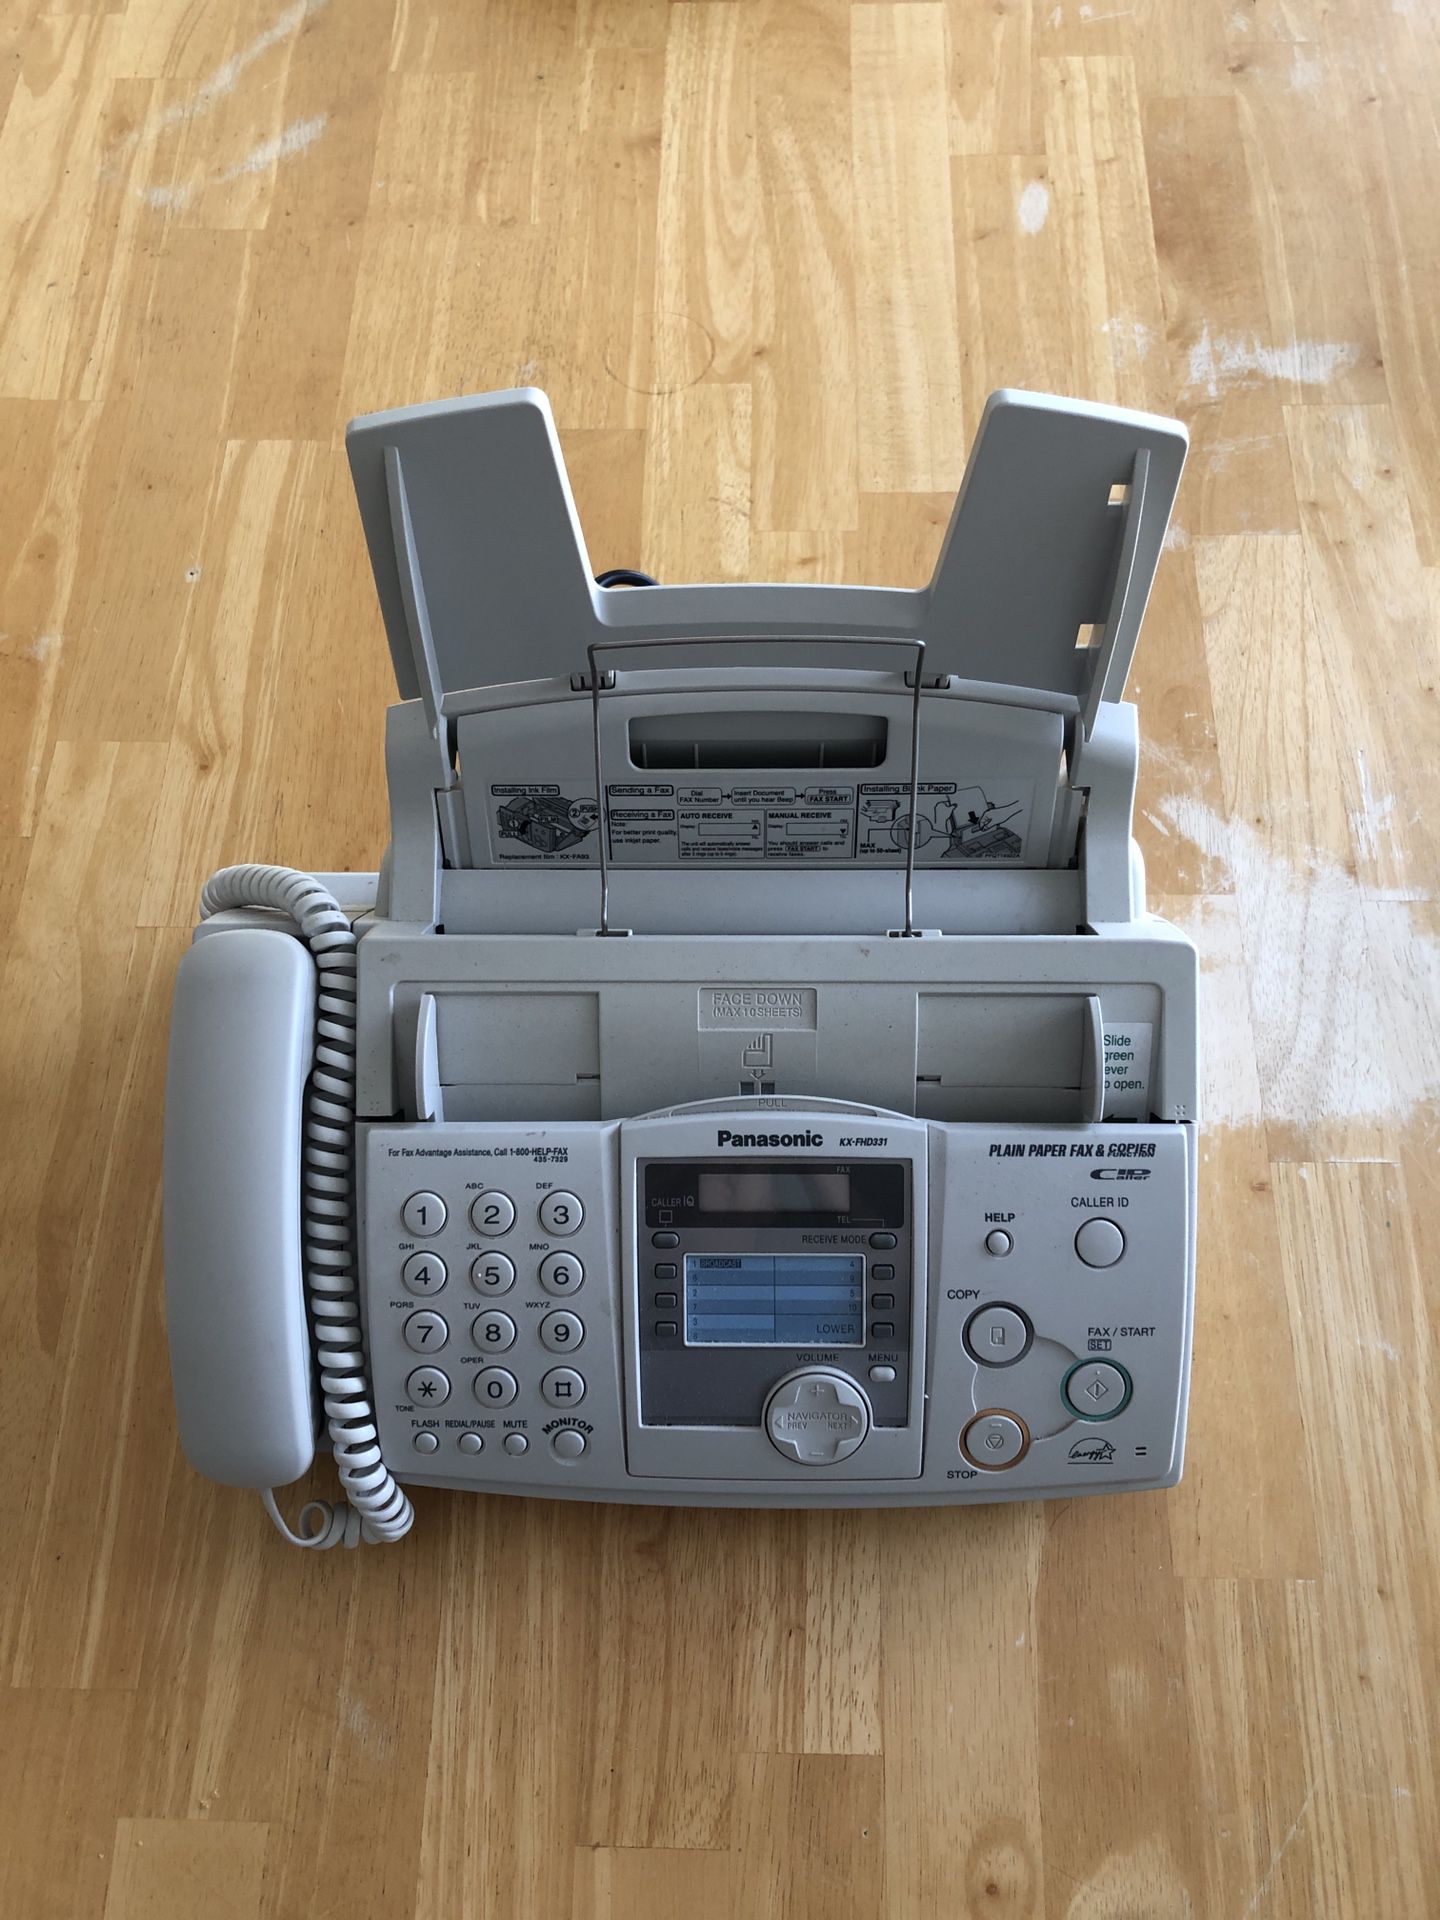 Panasonic Fax Machine 